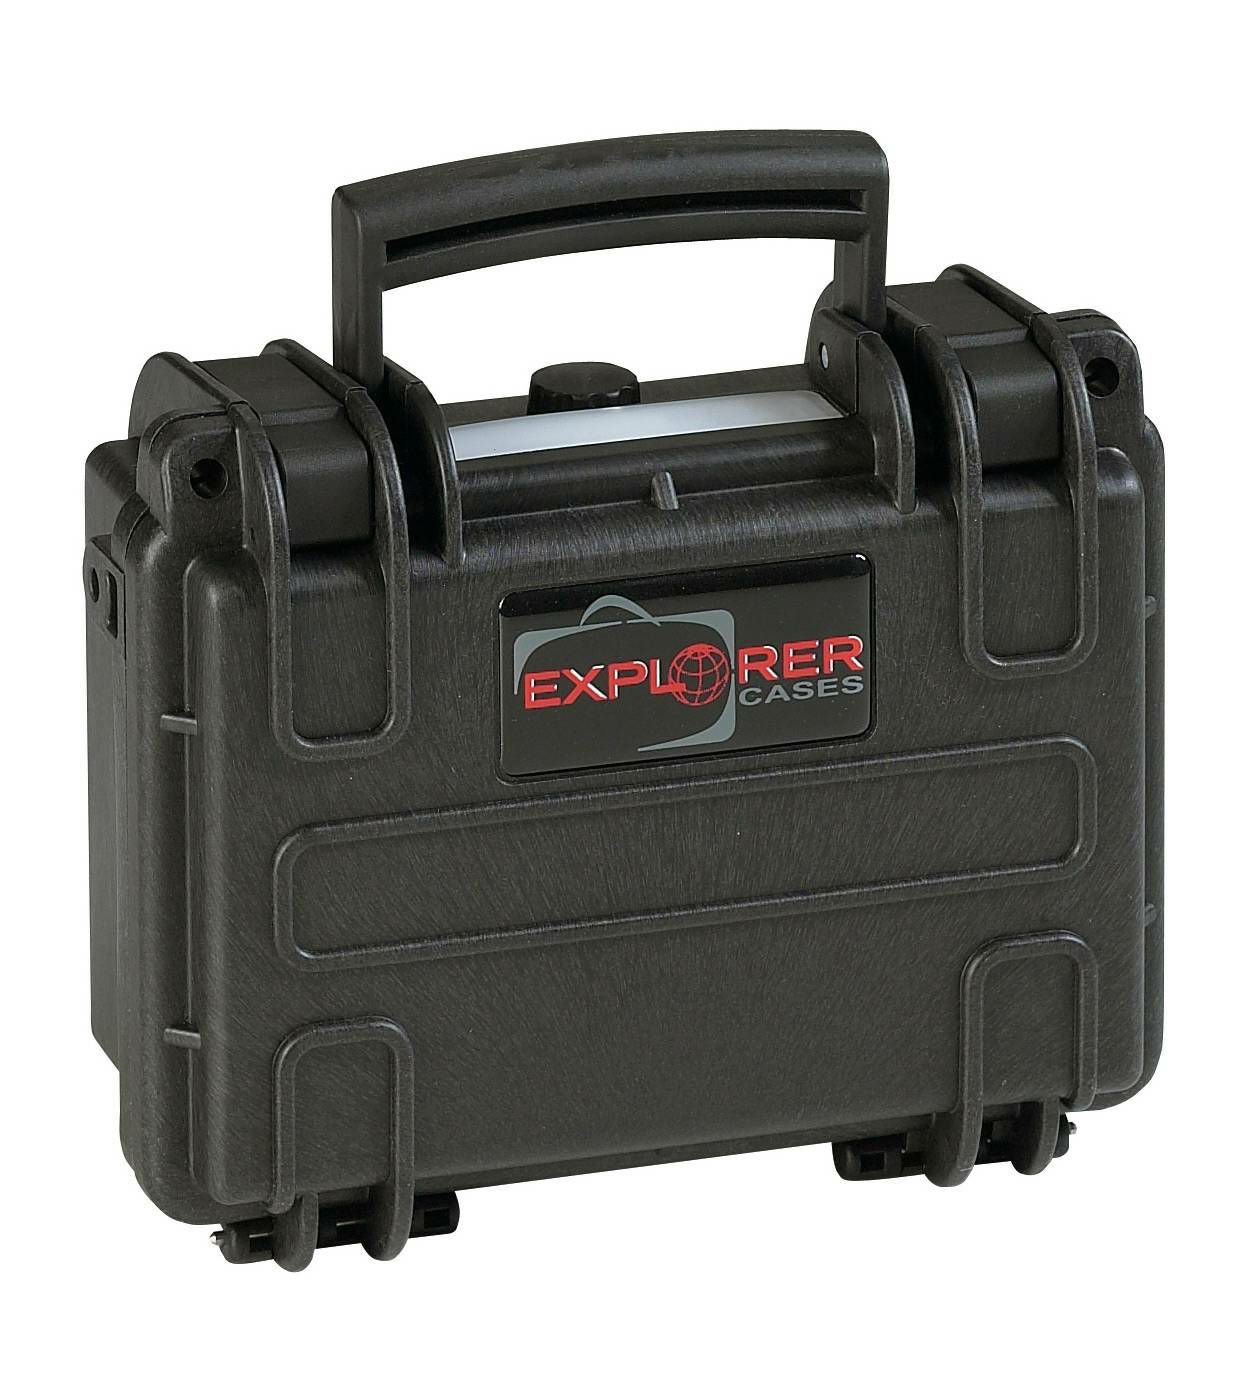 Explorer Cases 1908 Black Foam 216x180x102mm kufer za foto opremu kofer Camera Case